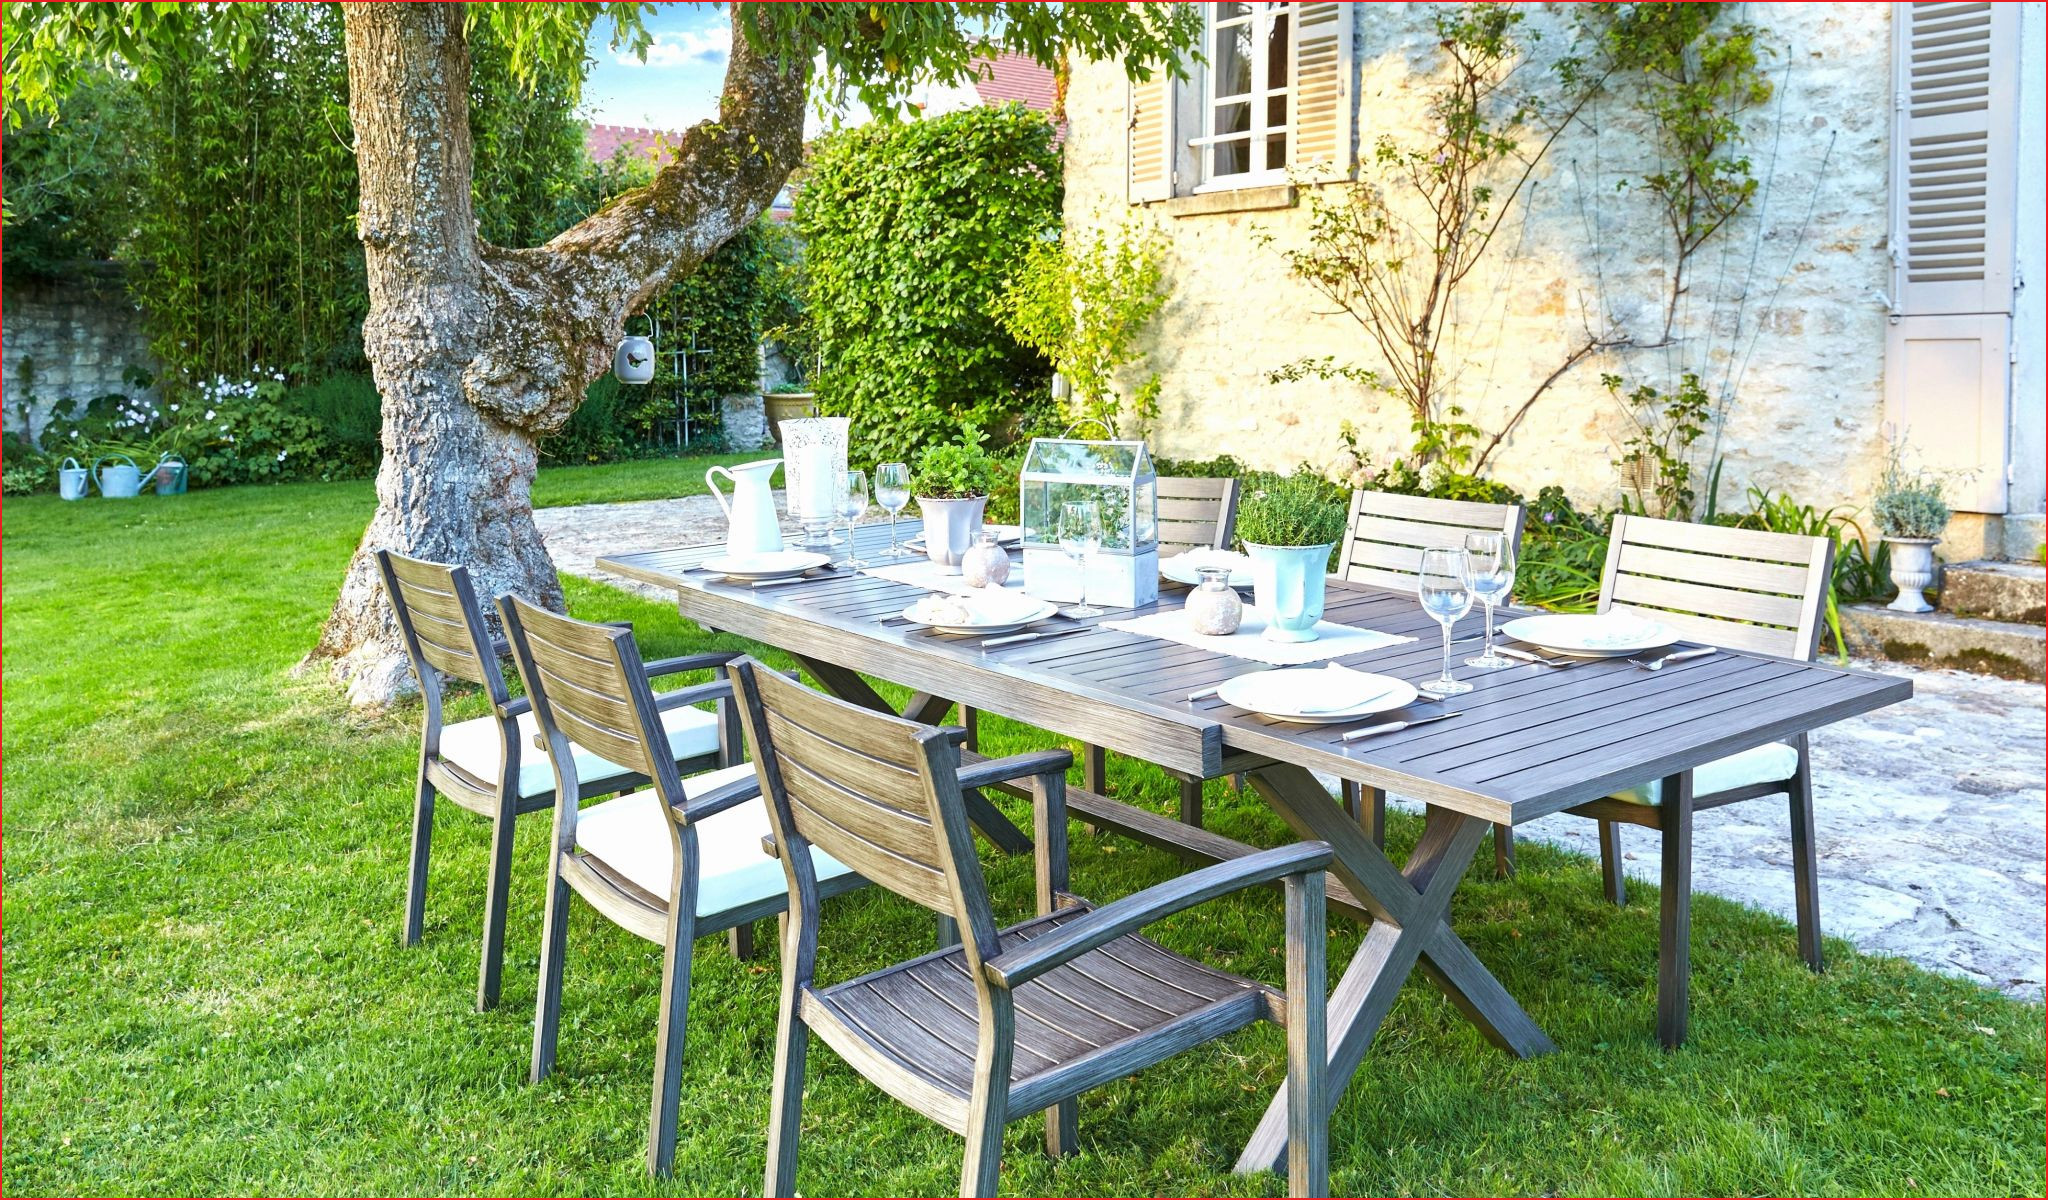 Table Exterieur Resine Beau Innovante Banc Pour Jardin Image De Jardin Décoratif